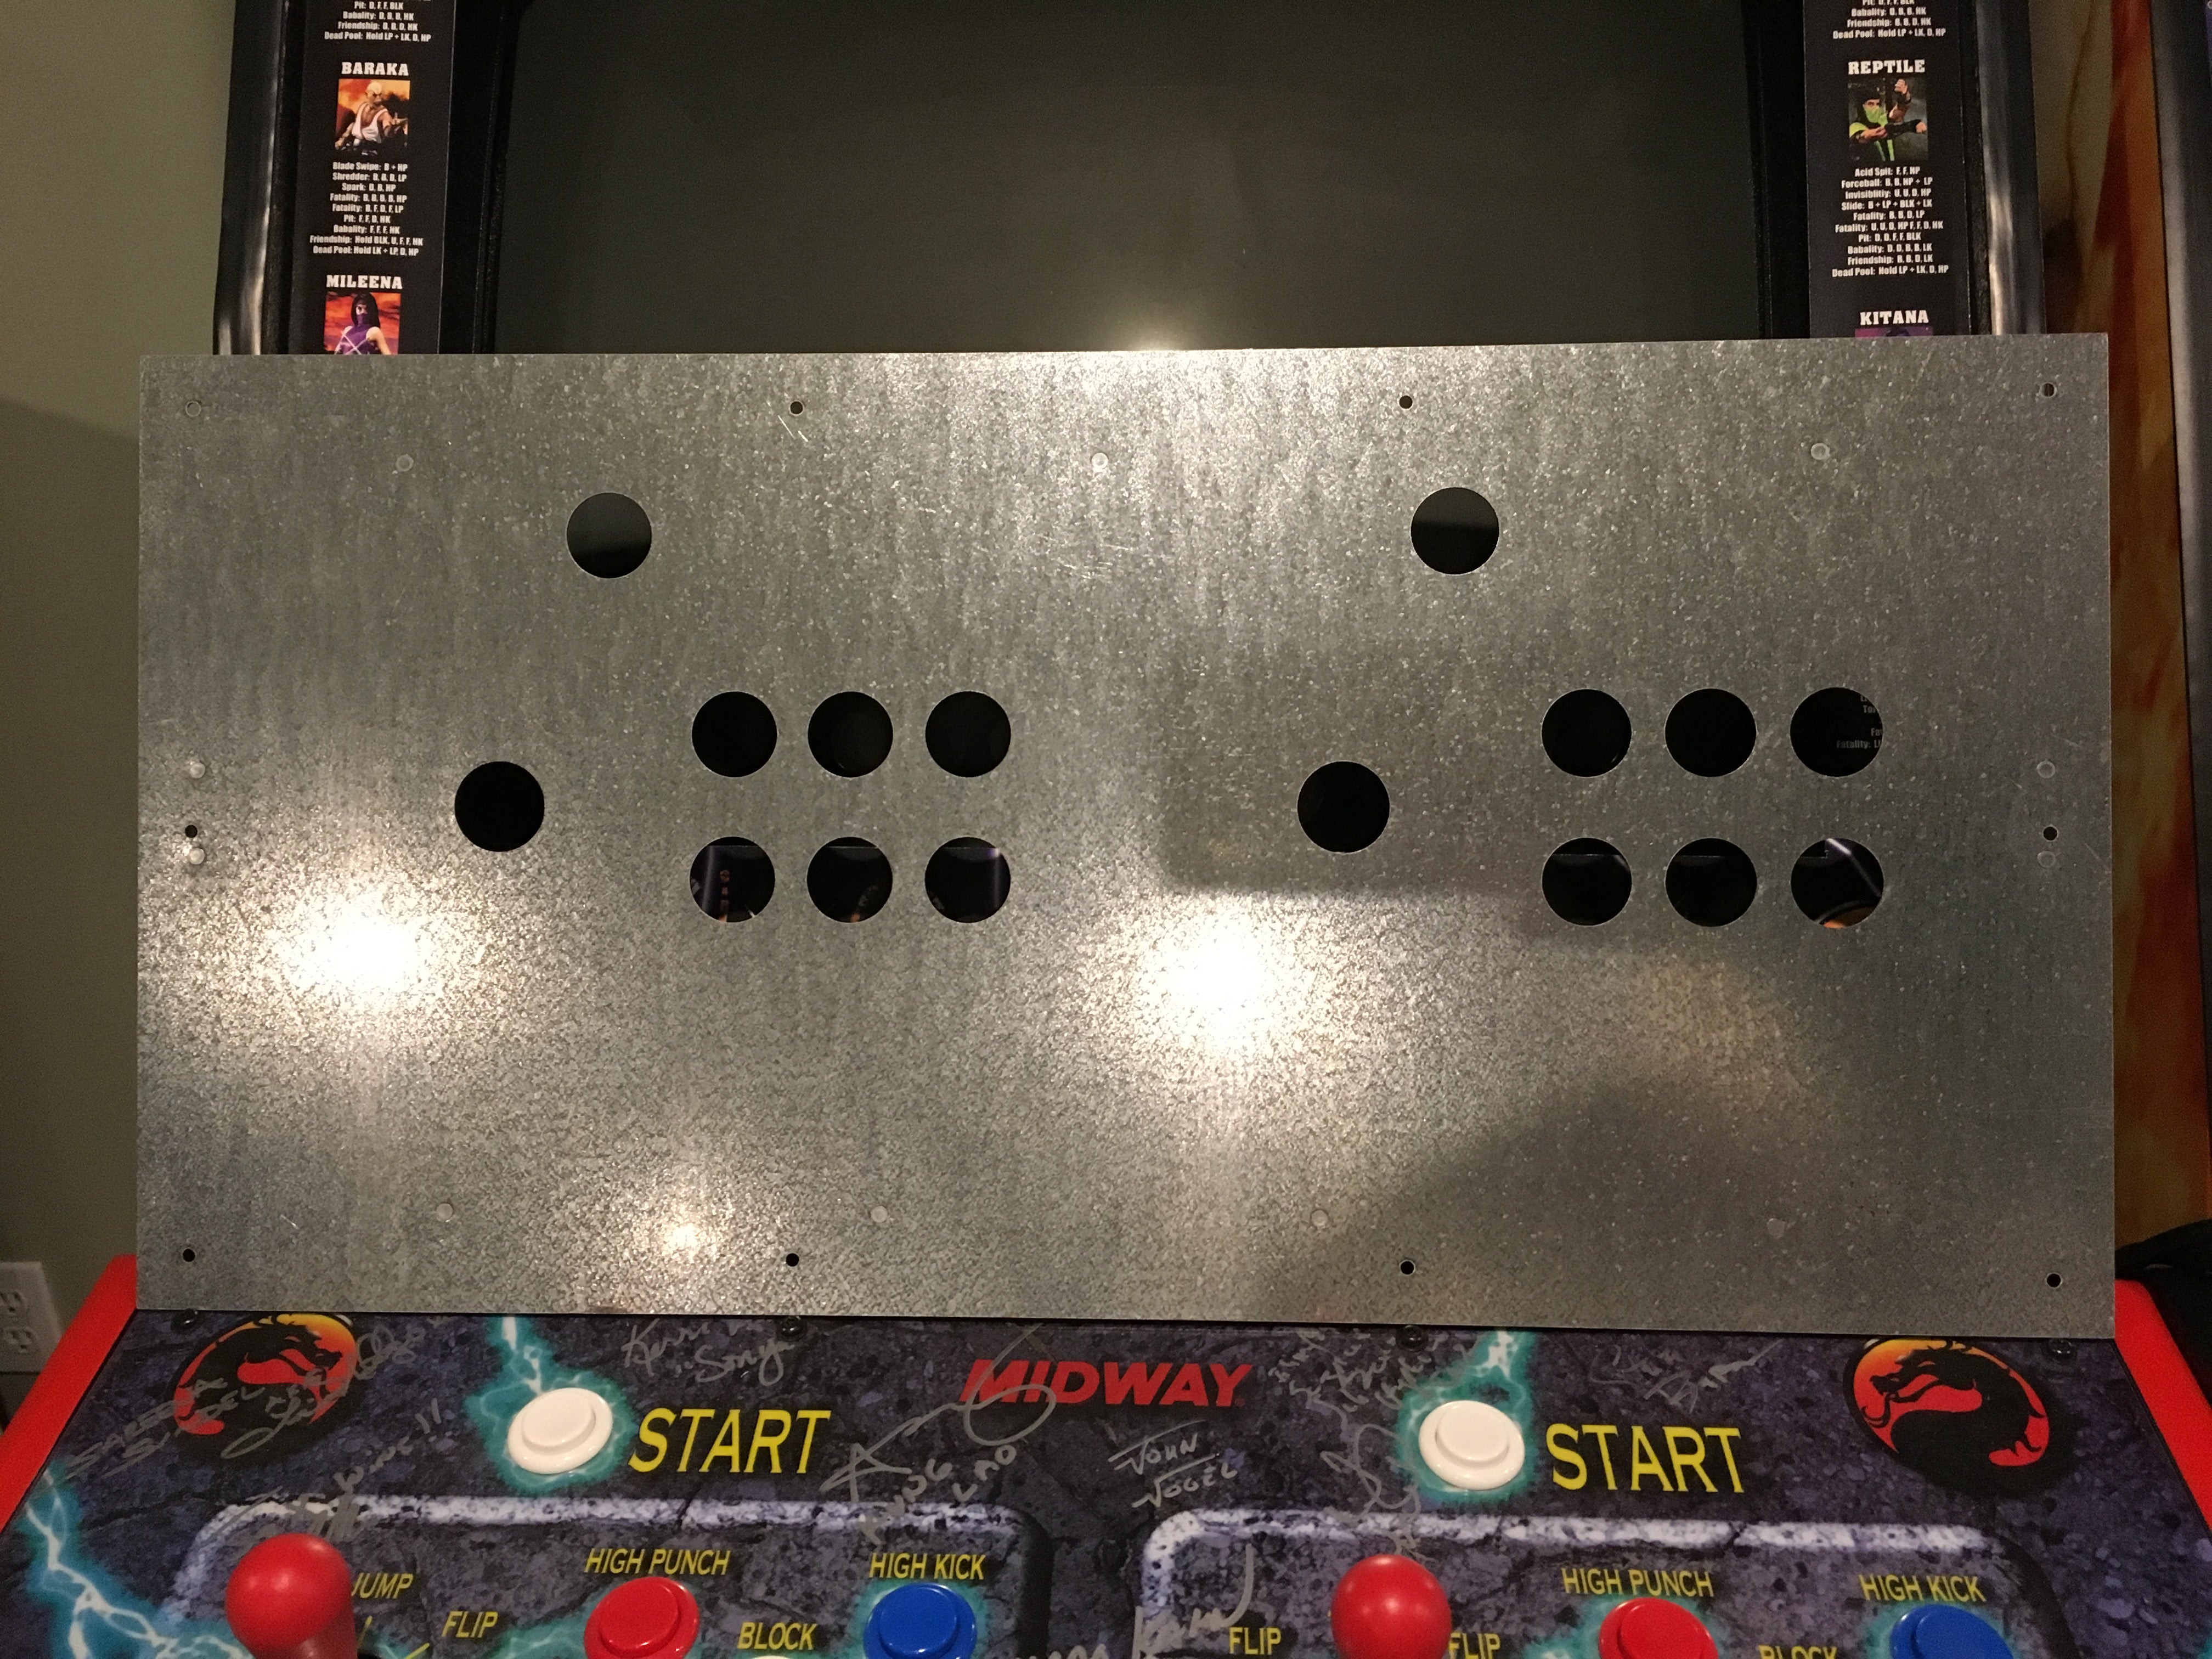 Panel de control metálico de 6 botones estilo Mortal Kombat